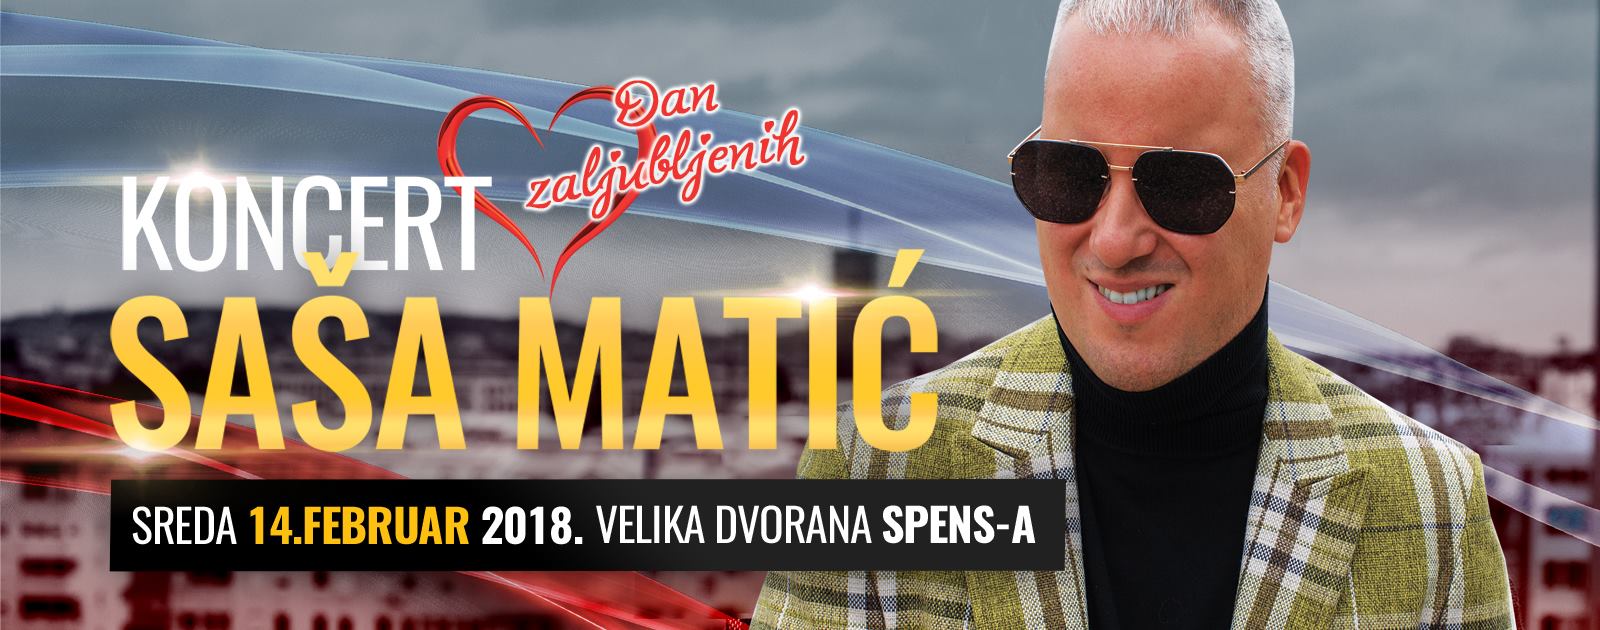 [:en]Saša Matić 14.02.2018. SPENS